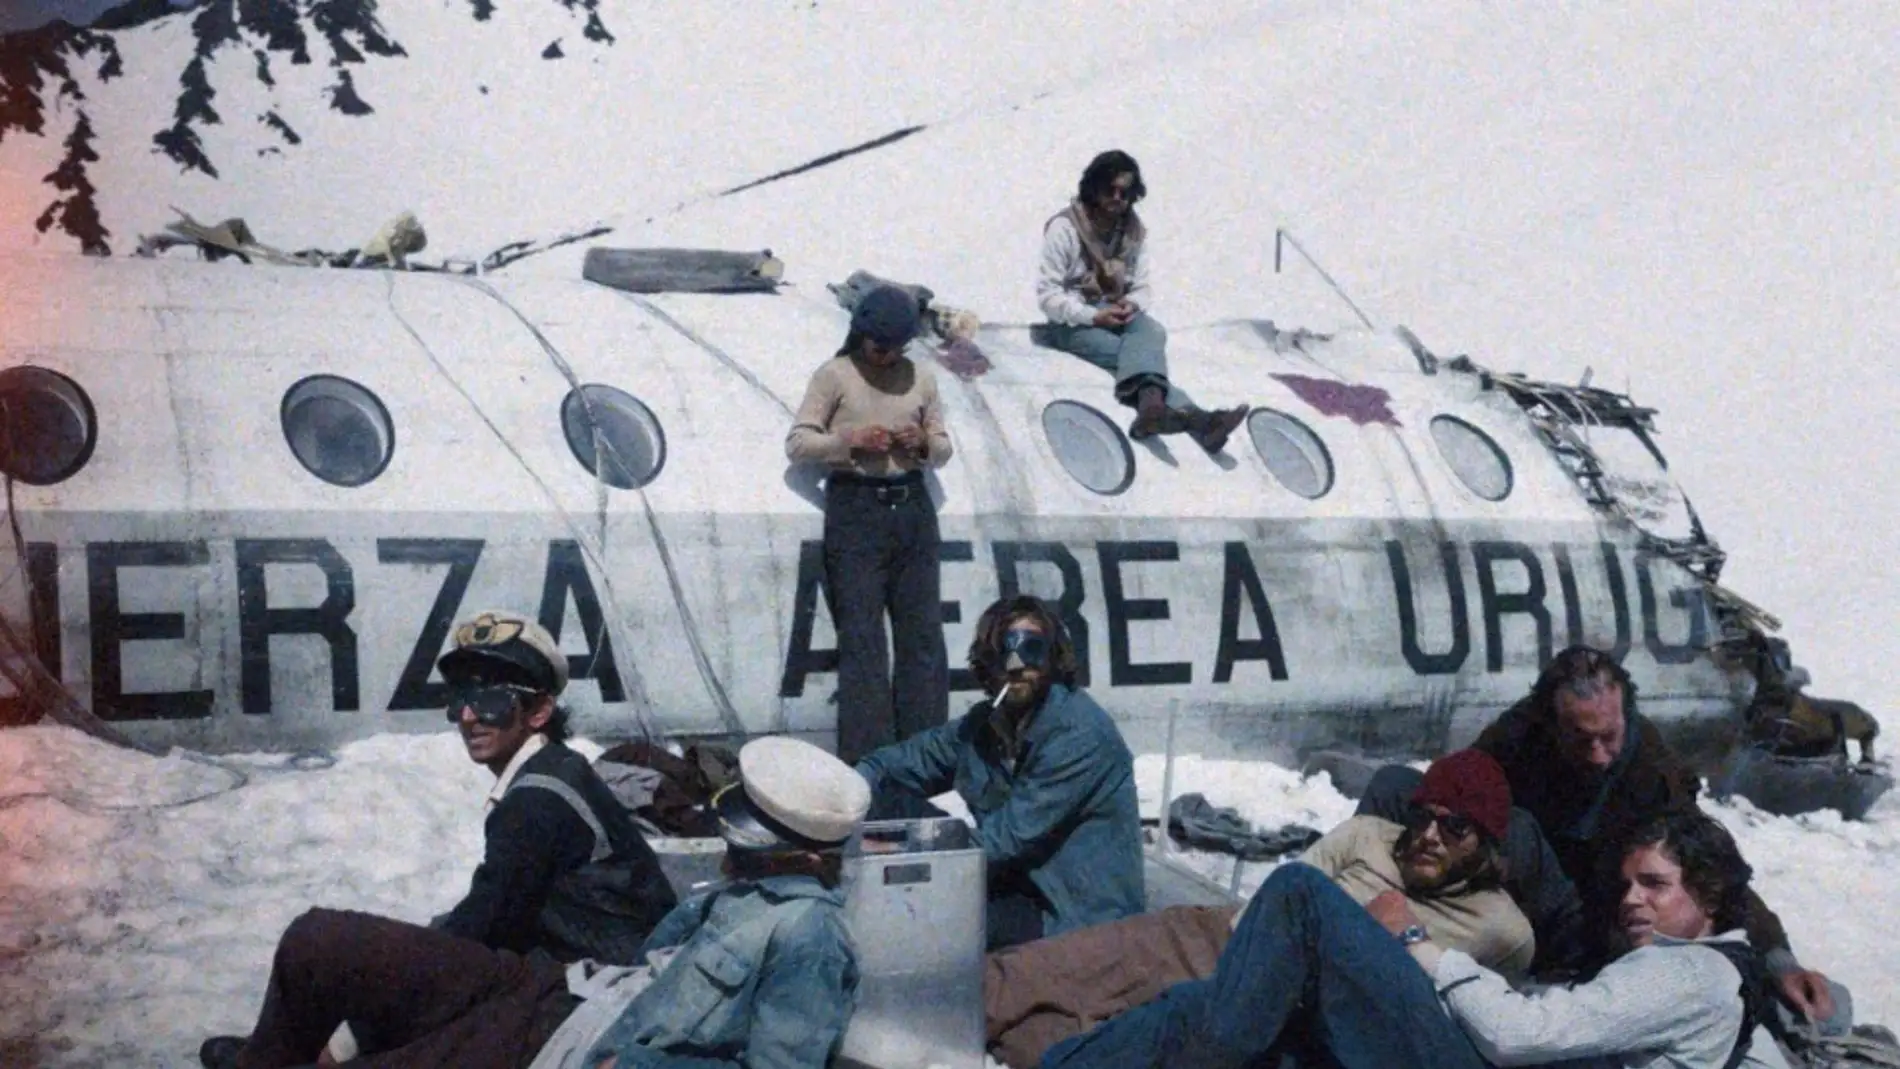 'La sociedad de la nieve' de Bayona, rodada en Sierra Nevada, representará a España en los próximos Oscar